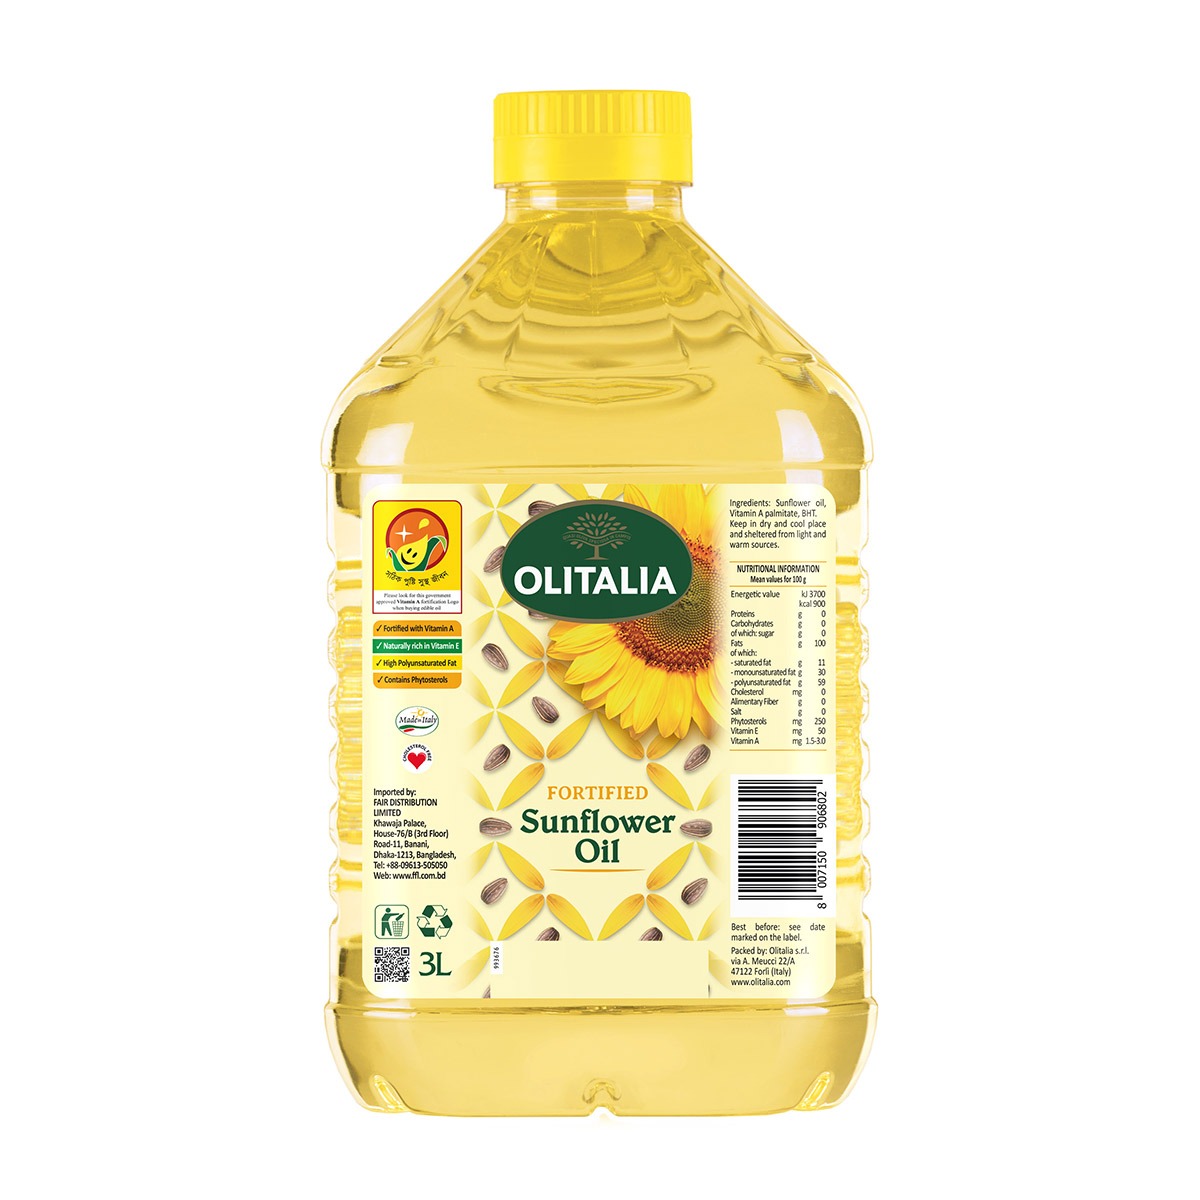 Olitalia Fortified Sunflower Oil 5ltr